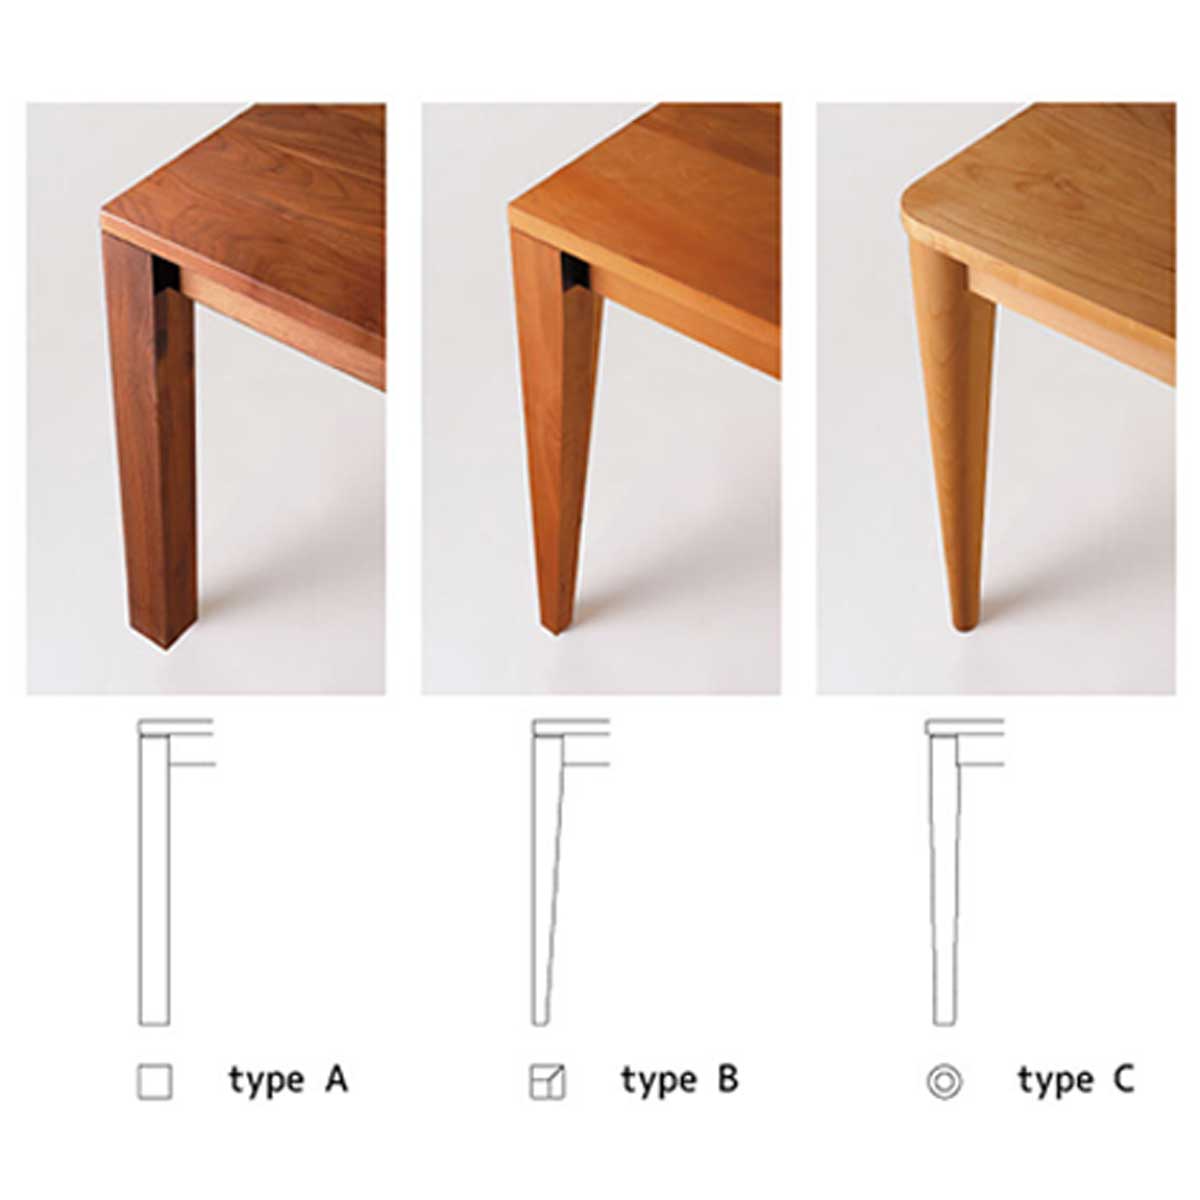 リーブス ダイニングテーブルウォールナット材は、脚の形はAタイプ（角脚）、Bタイプ（角脚下細り）、Cタイプ（丸脚下細り）の3種類から選べます